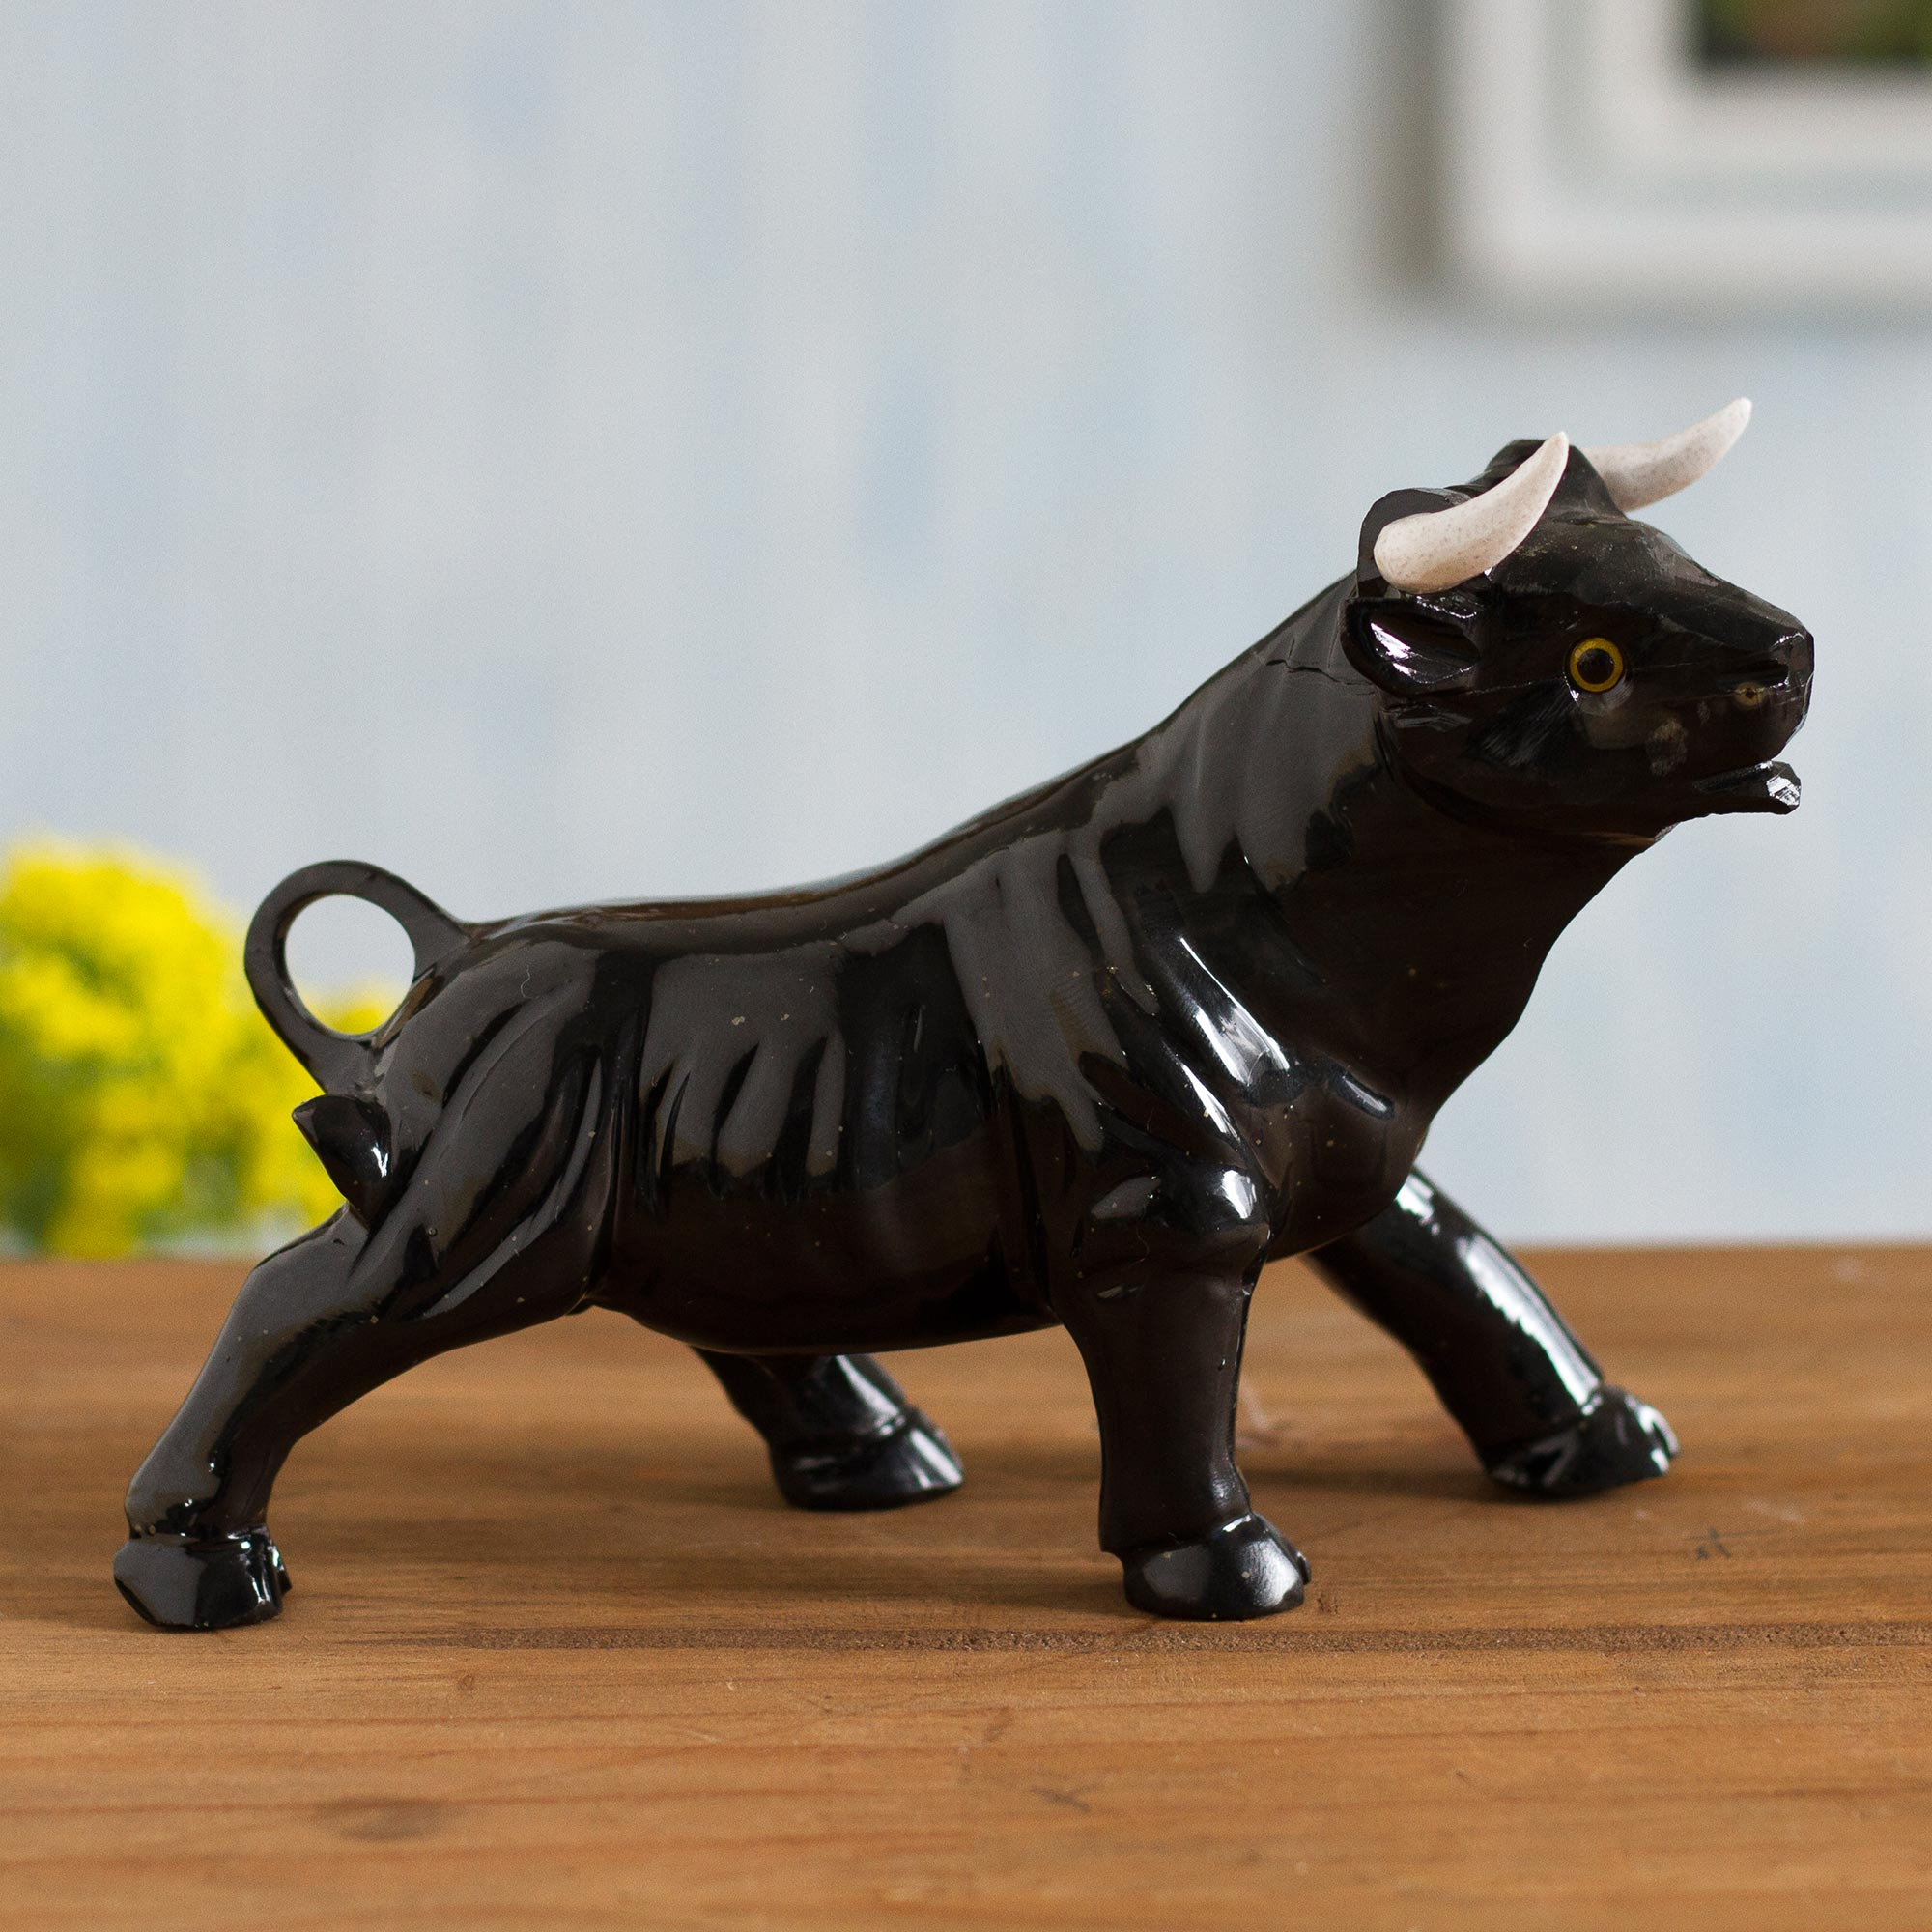 Black Onyx Bull Sculpture Crafted in Peru - Legendary Bull | NOVICA